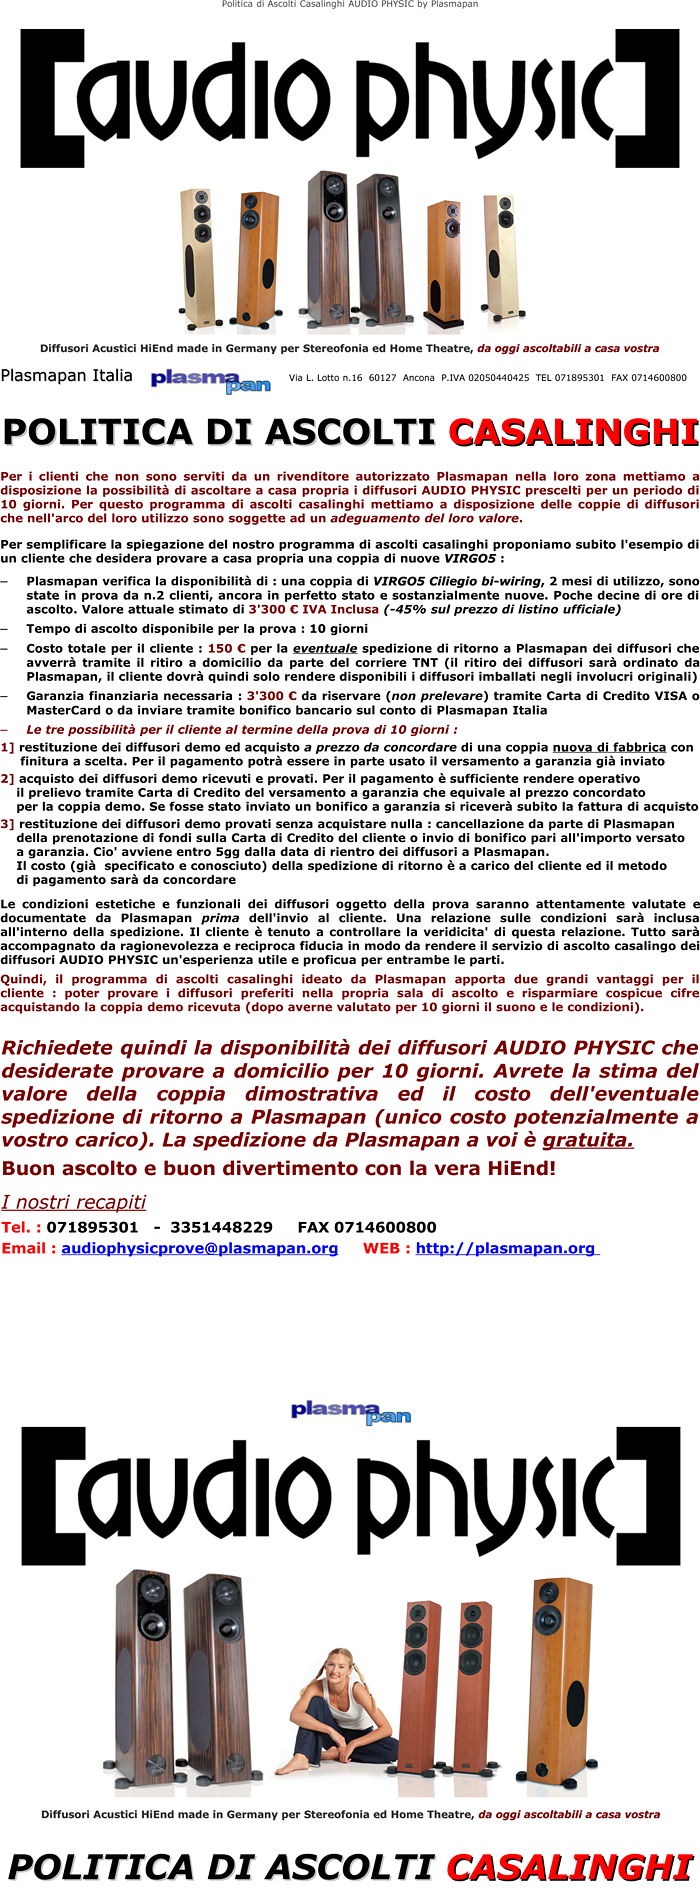 Politica di ascolti casalinghi di 10 giorni per i diffusori AUDIO PHYSIC offerta da Plasmapan Italia